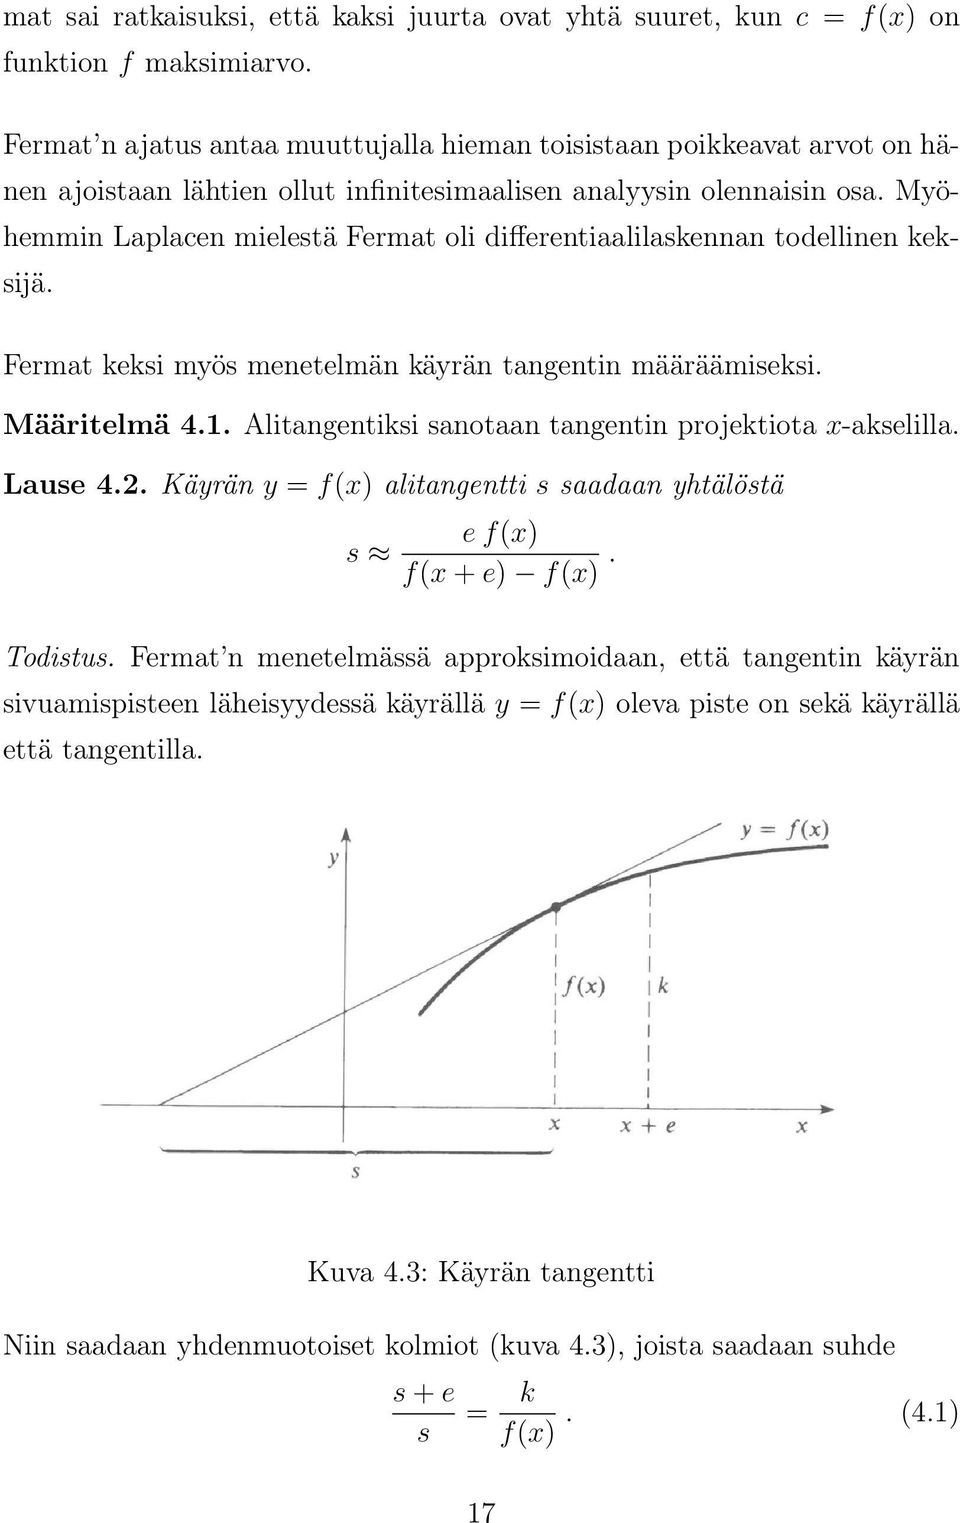 Myöhemmin Laplacen mielestä Fermat oli differentiaalilaskennan todellinen keksijä. Fermat keksi myös menetelmän käyrän tangentin määräämiseksi. Määritelmä 4.1.